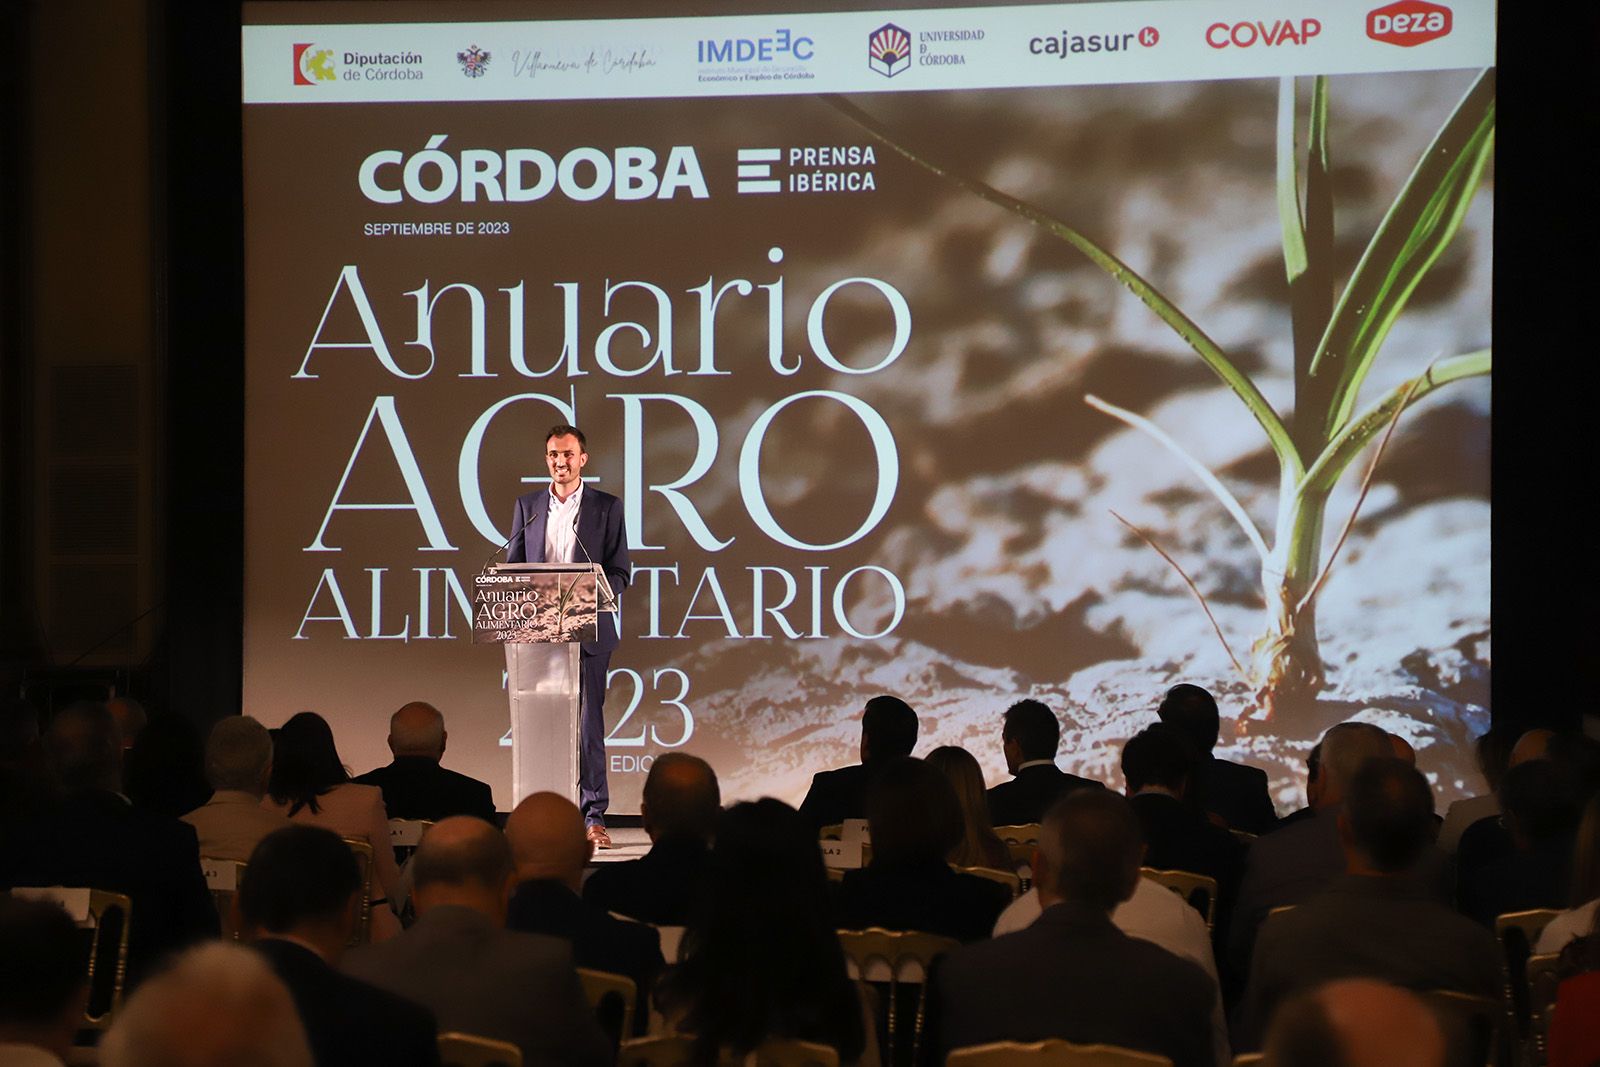 Diario CÓRDOBA presenta su Anuario Agroalimentario 2023